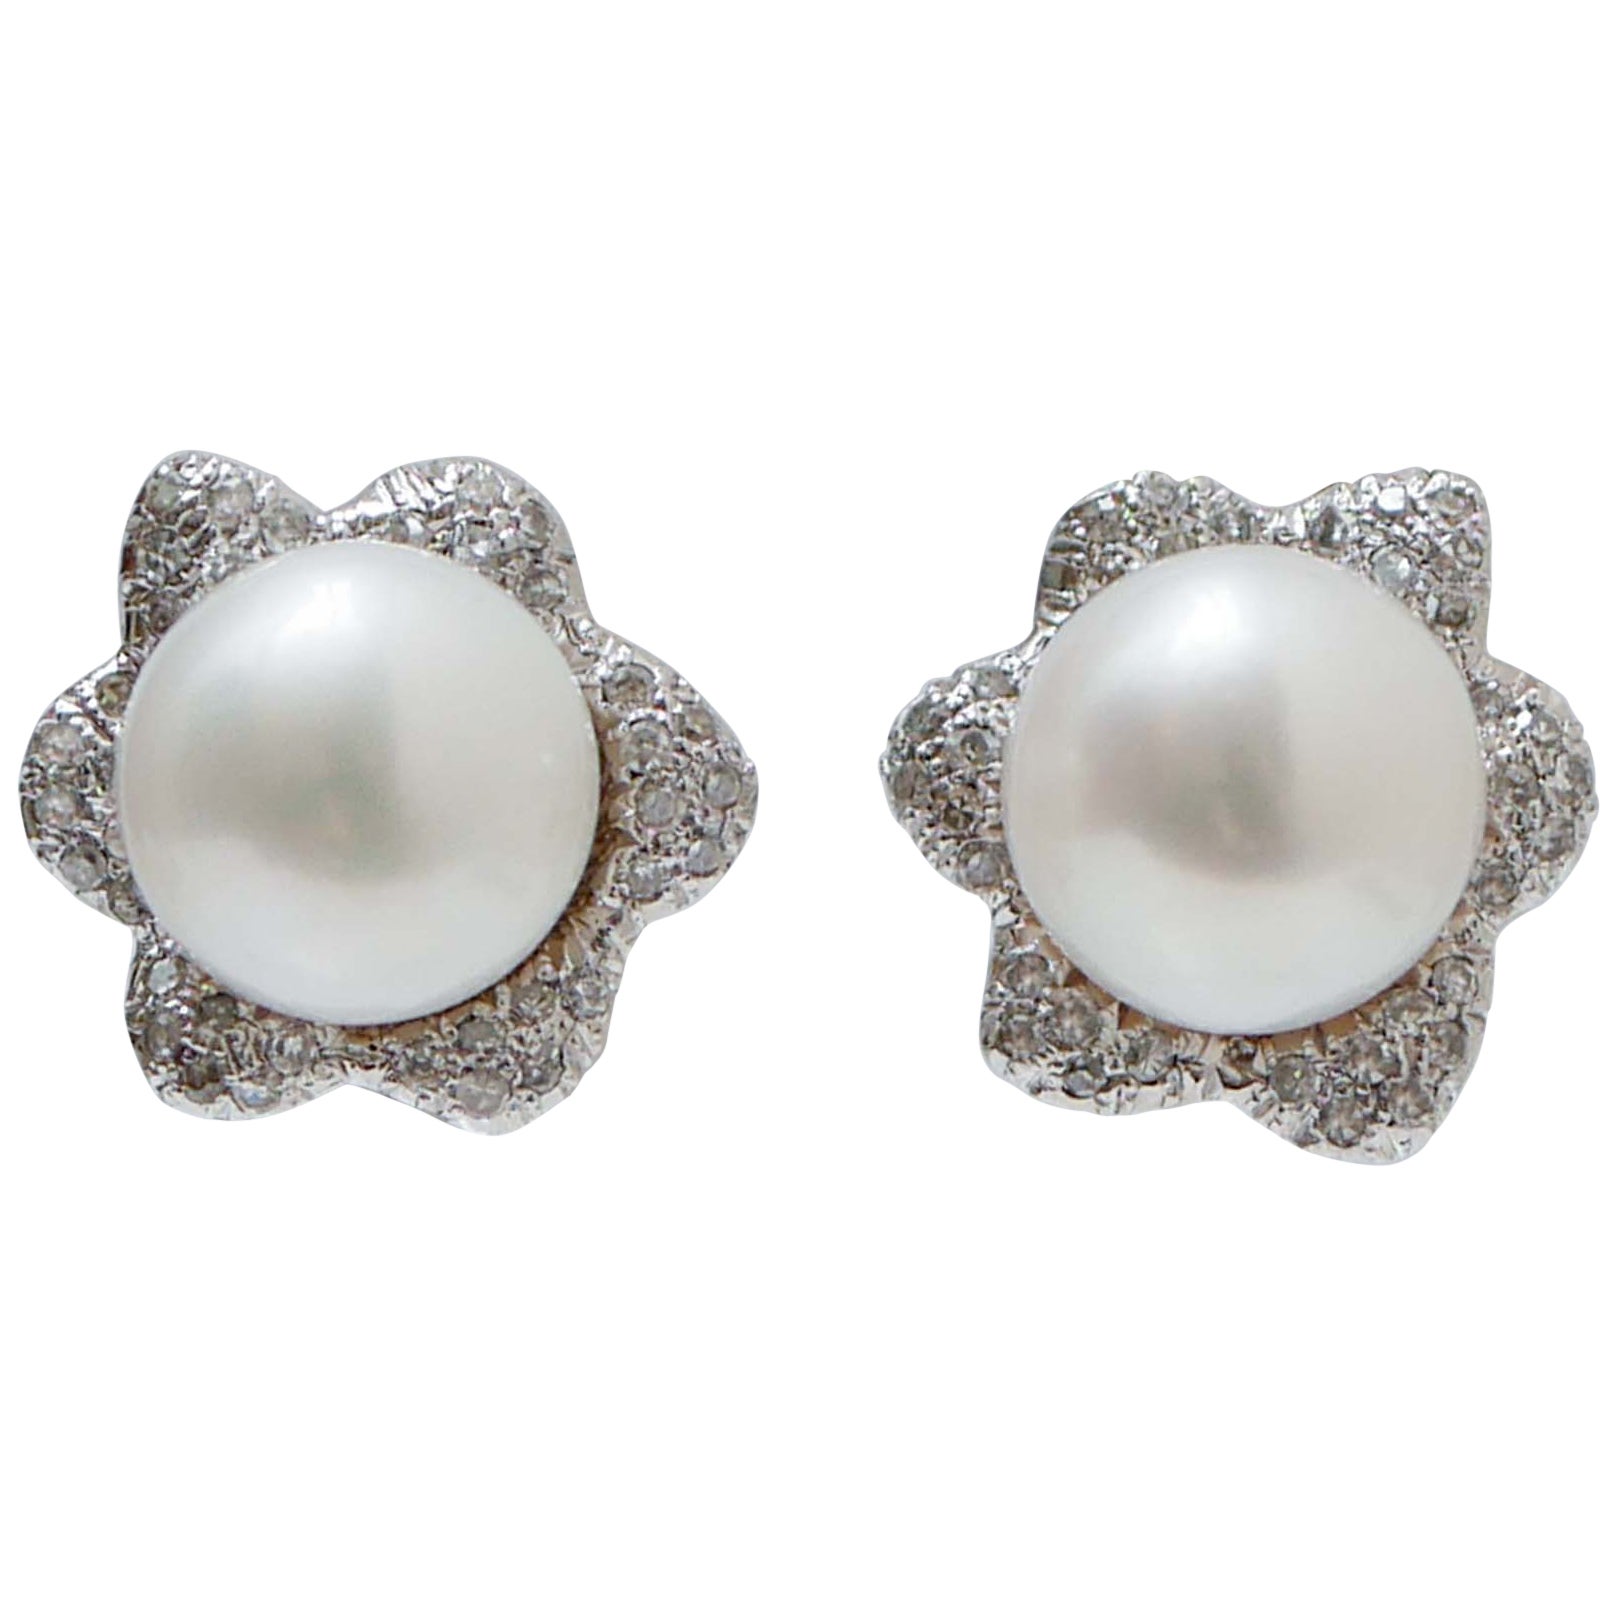 Pearls, Diamonds, 14 Karat White Gold Flower Earrings.